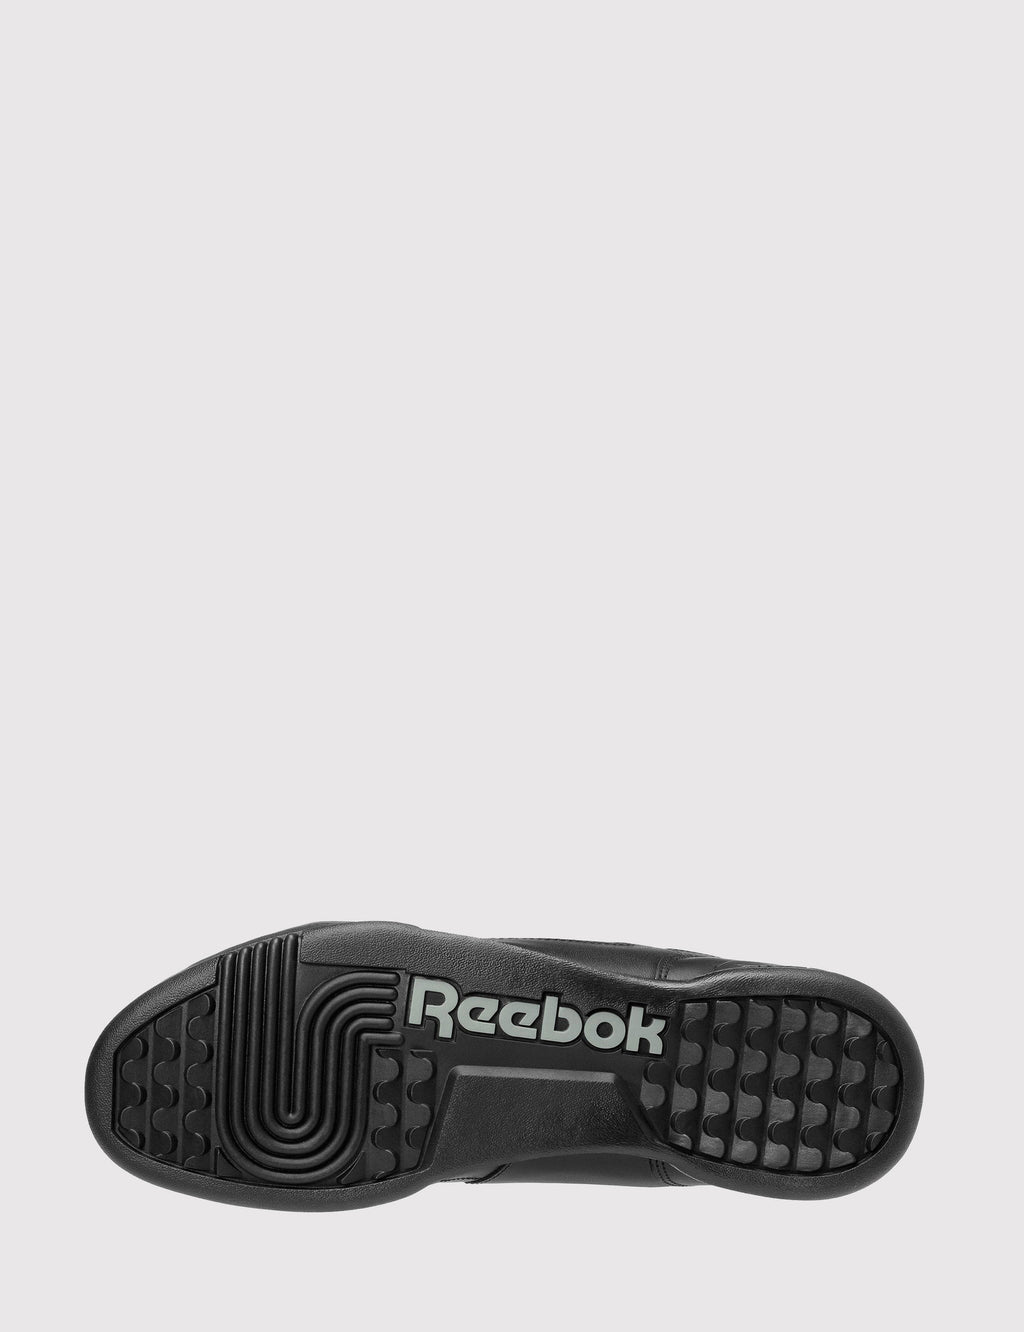 Reebok Workout Plus (2760) - Black/Charcoal | URBAN EXCESS.